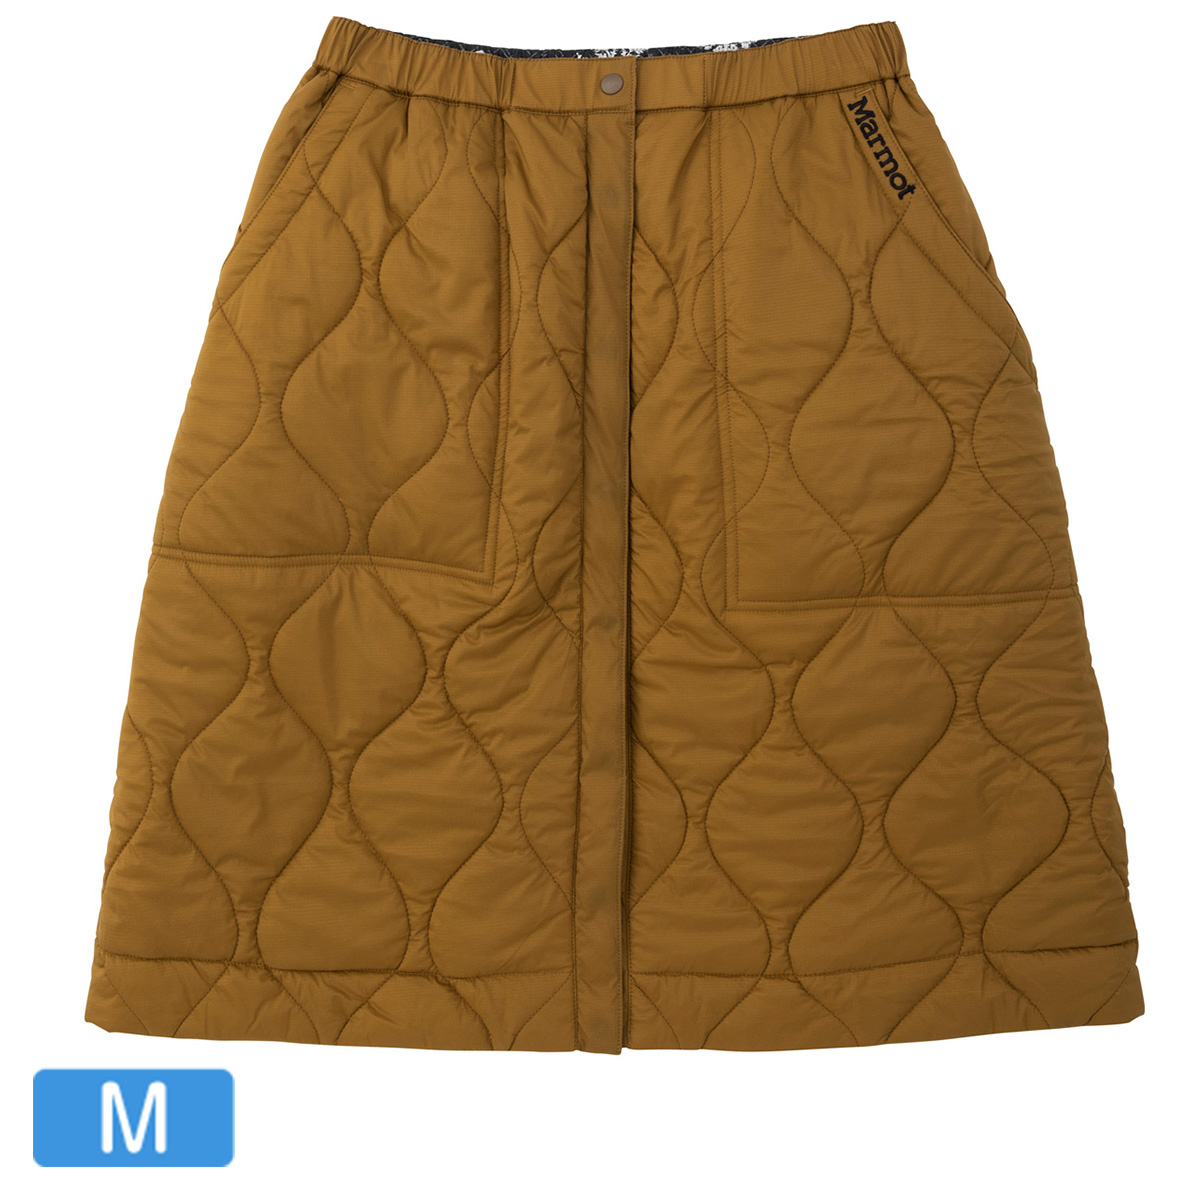 【アウトレット】W’s Reversible PRIMALOFT Skirt / ウィメンズリバーシブルプリマロフトスカート キクチバ Mサイズ